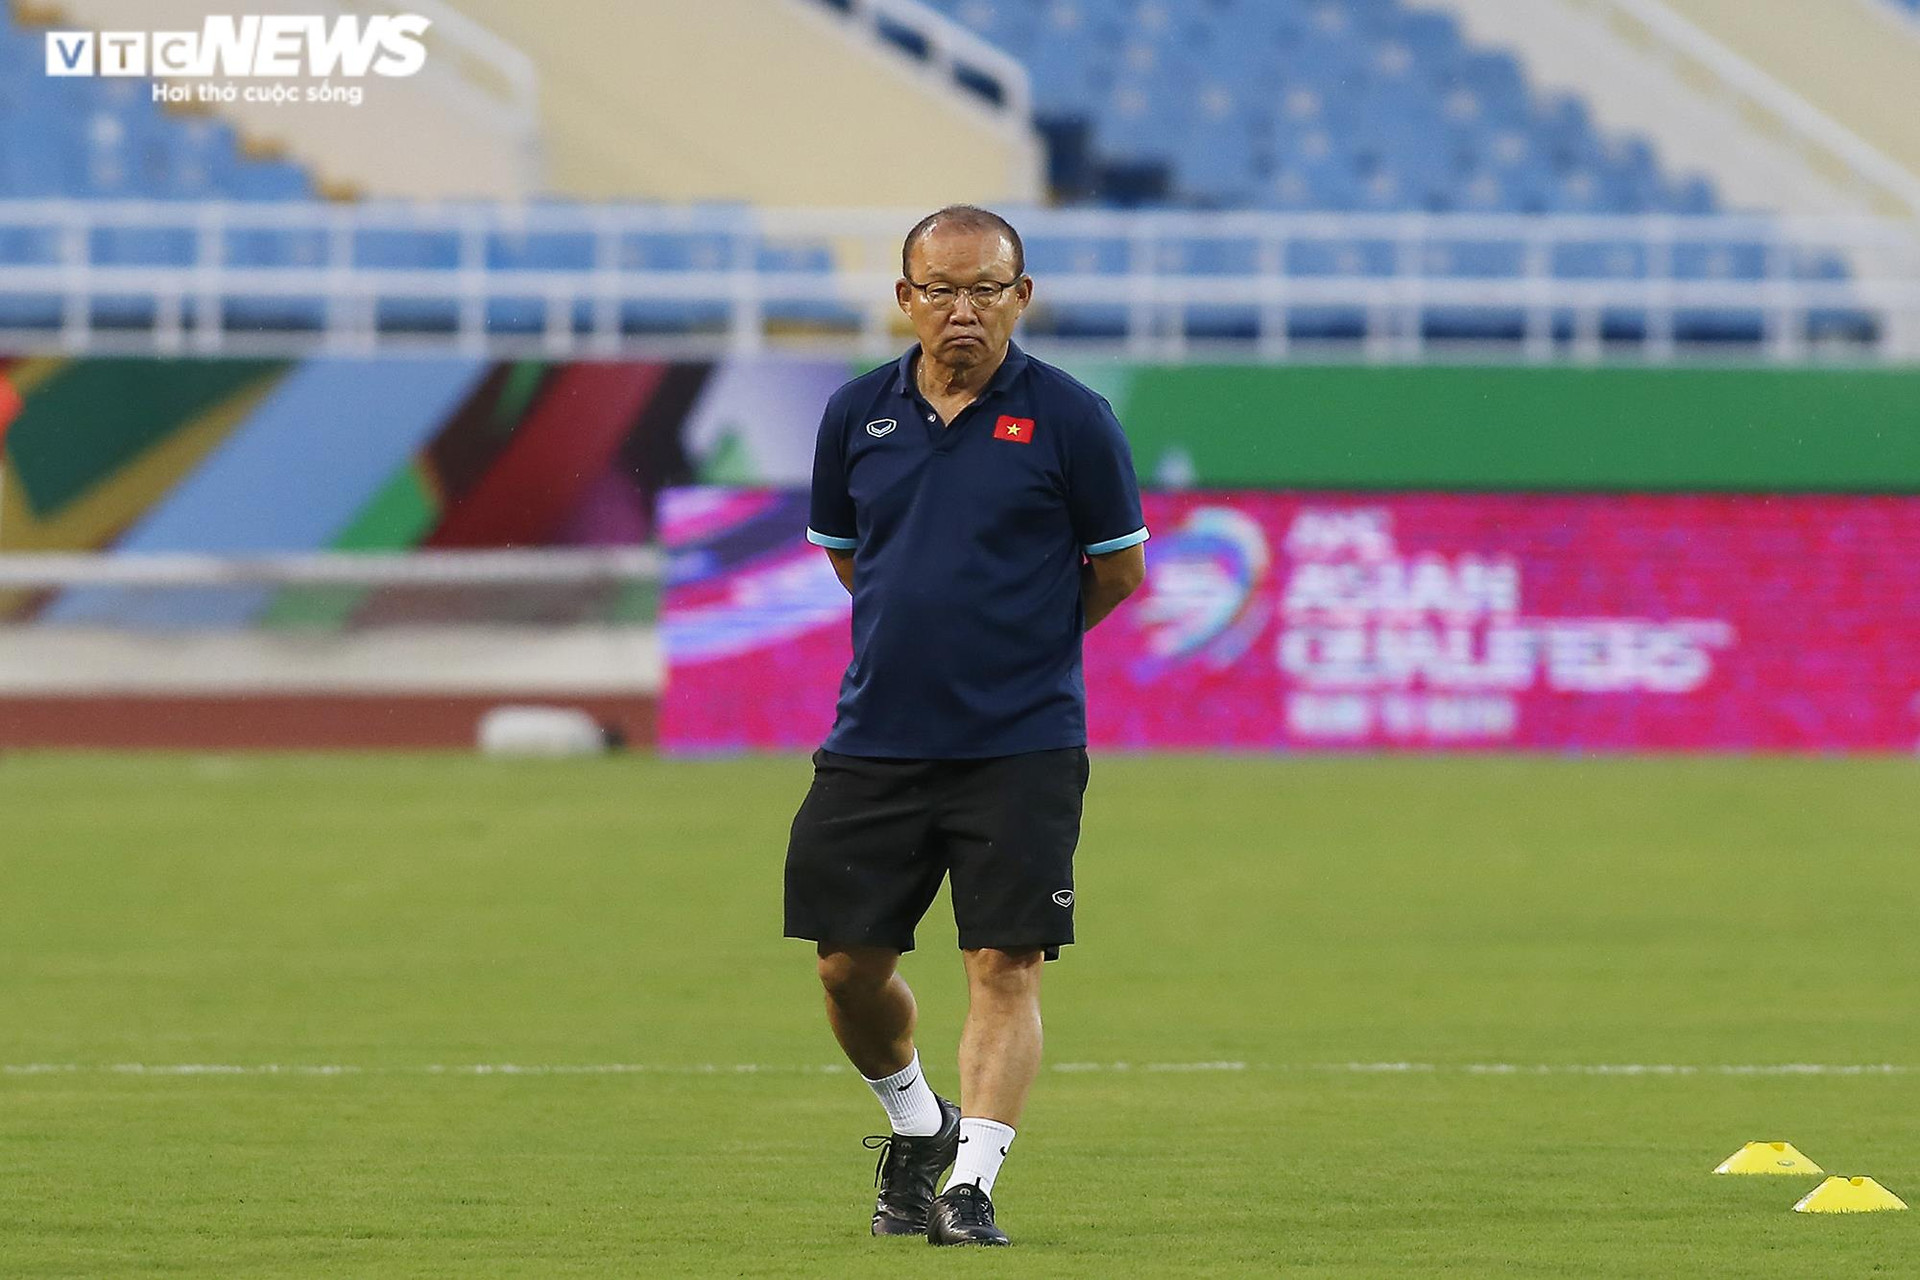 HLV Park Hang Seo đăm chiêu trước ngày tuyển Việt Nam đấu Oman - 5